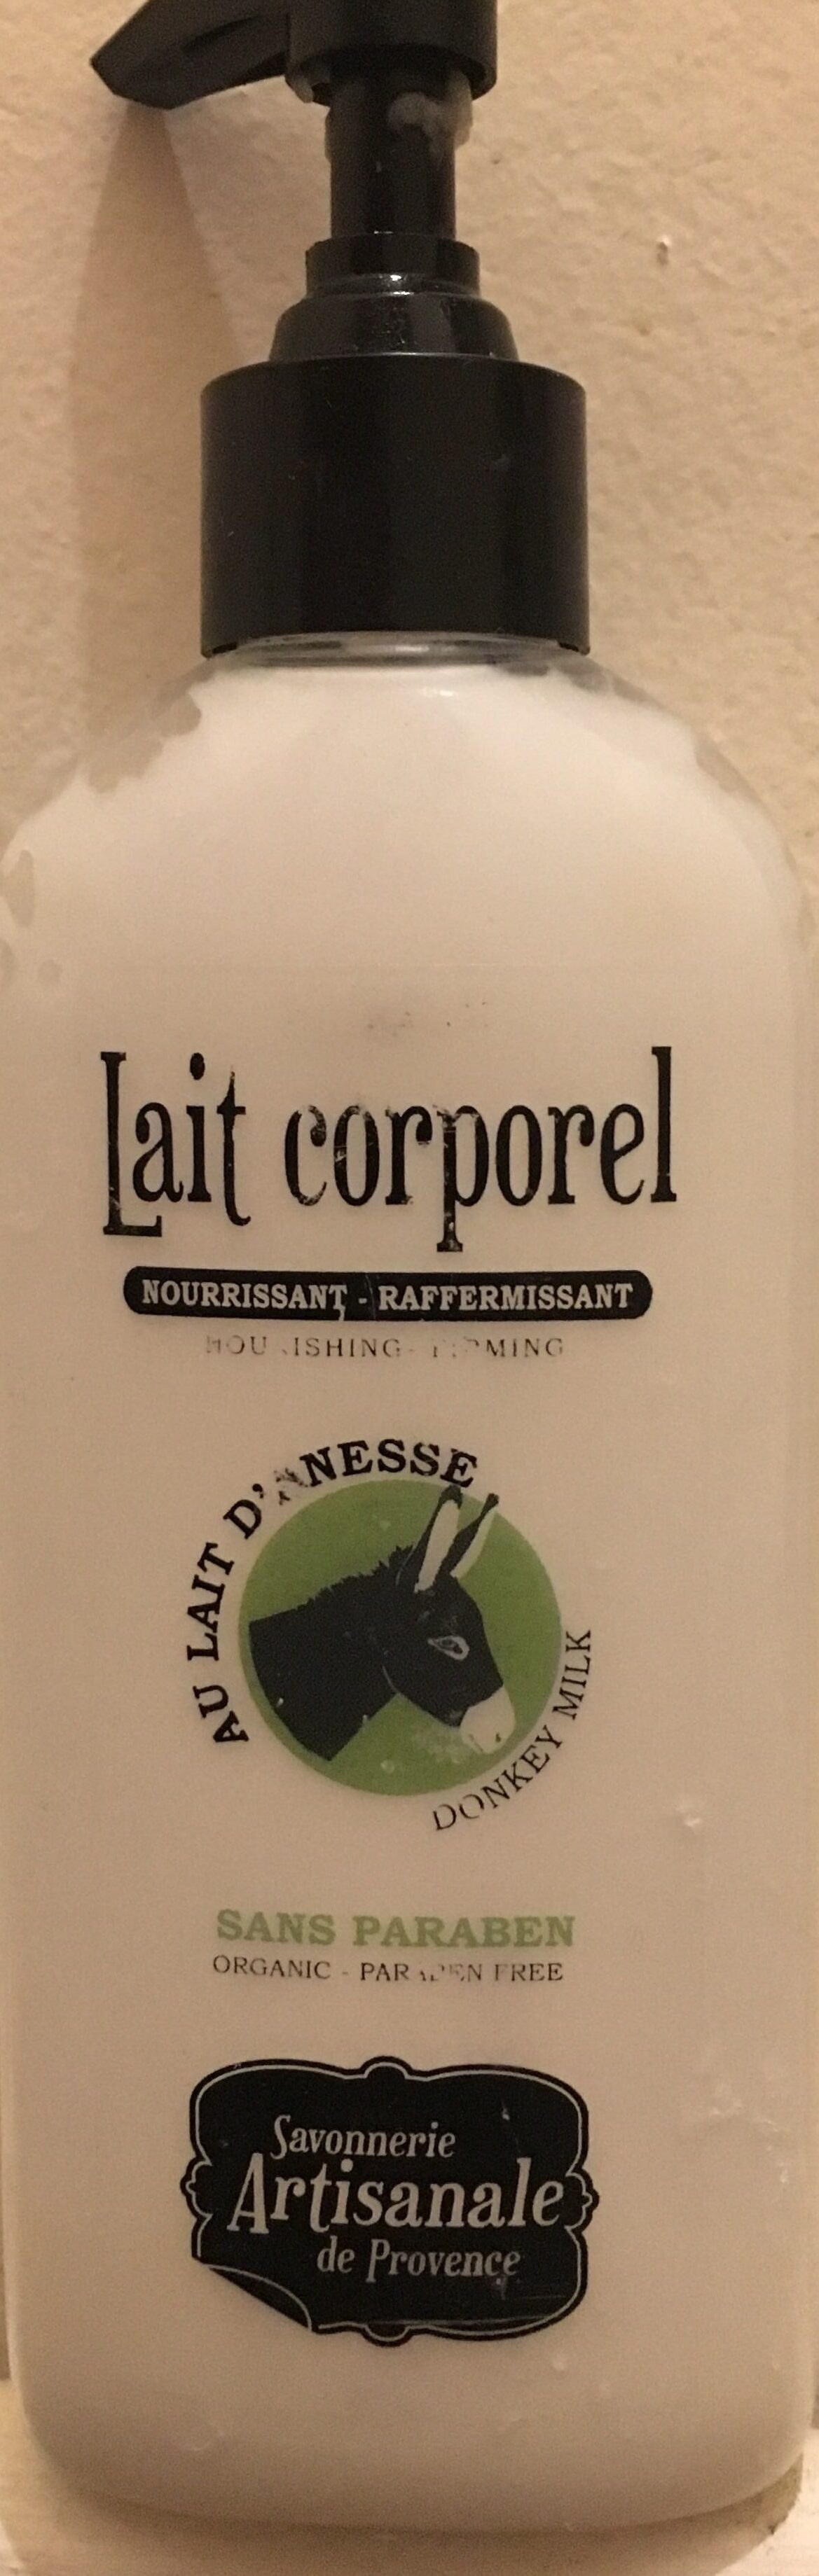 Lait corporel - Produkt - fr